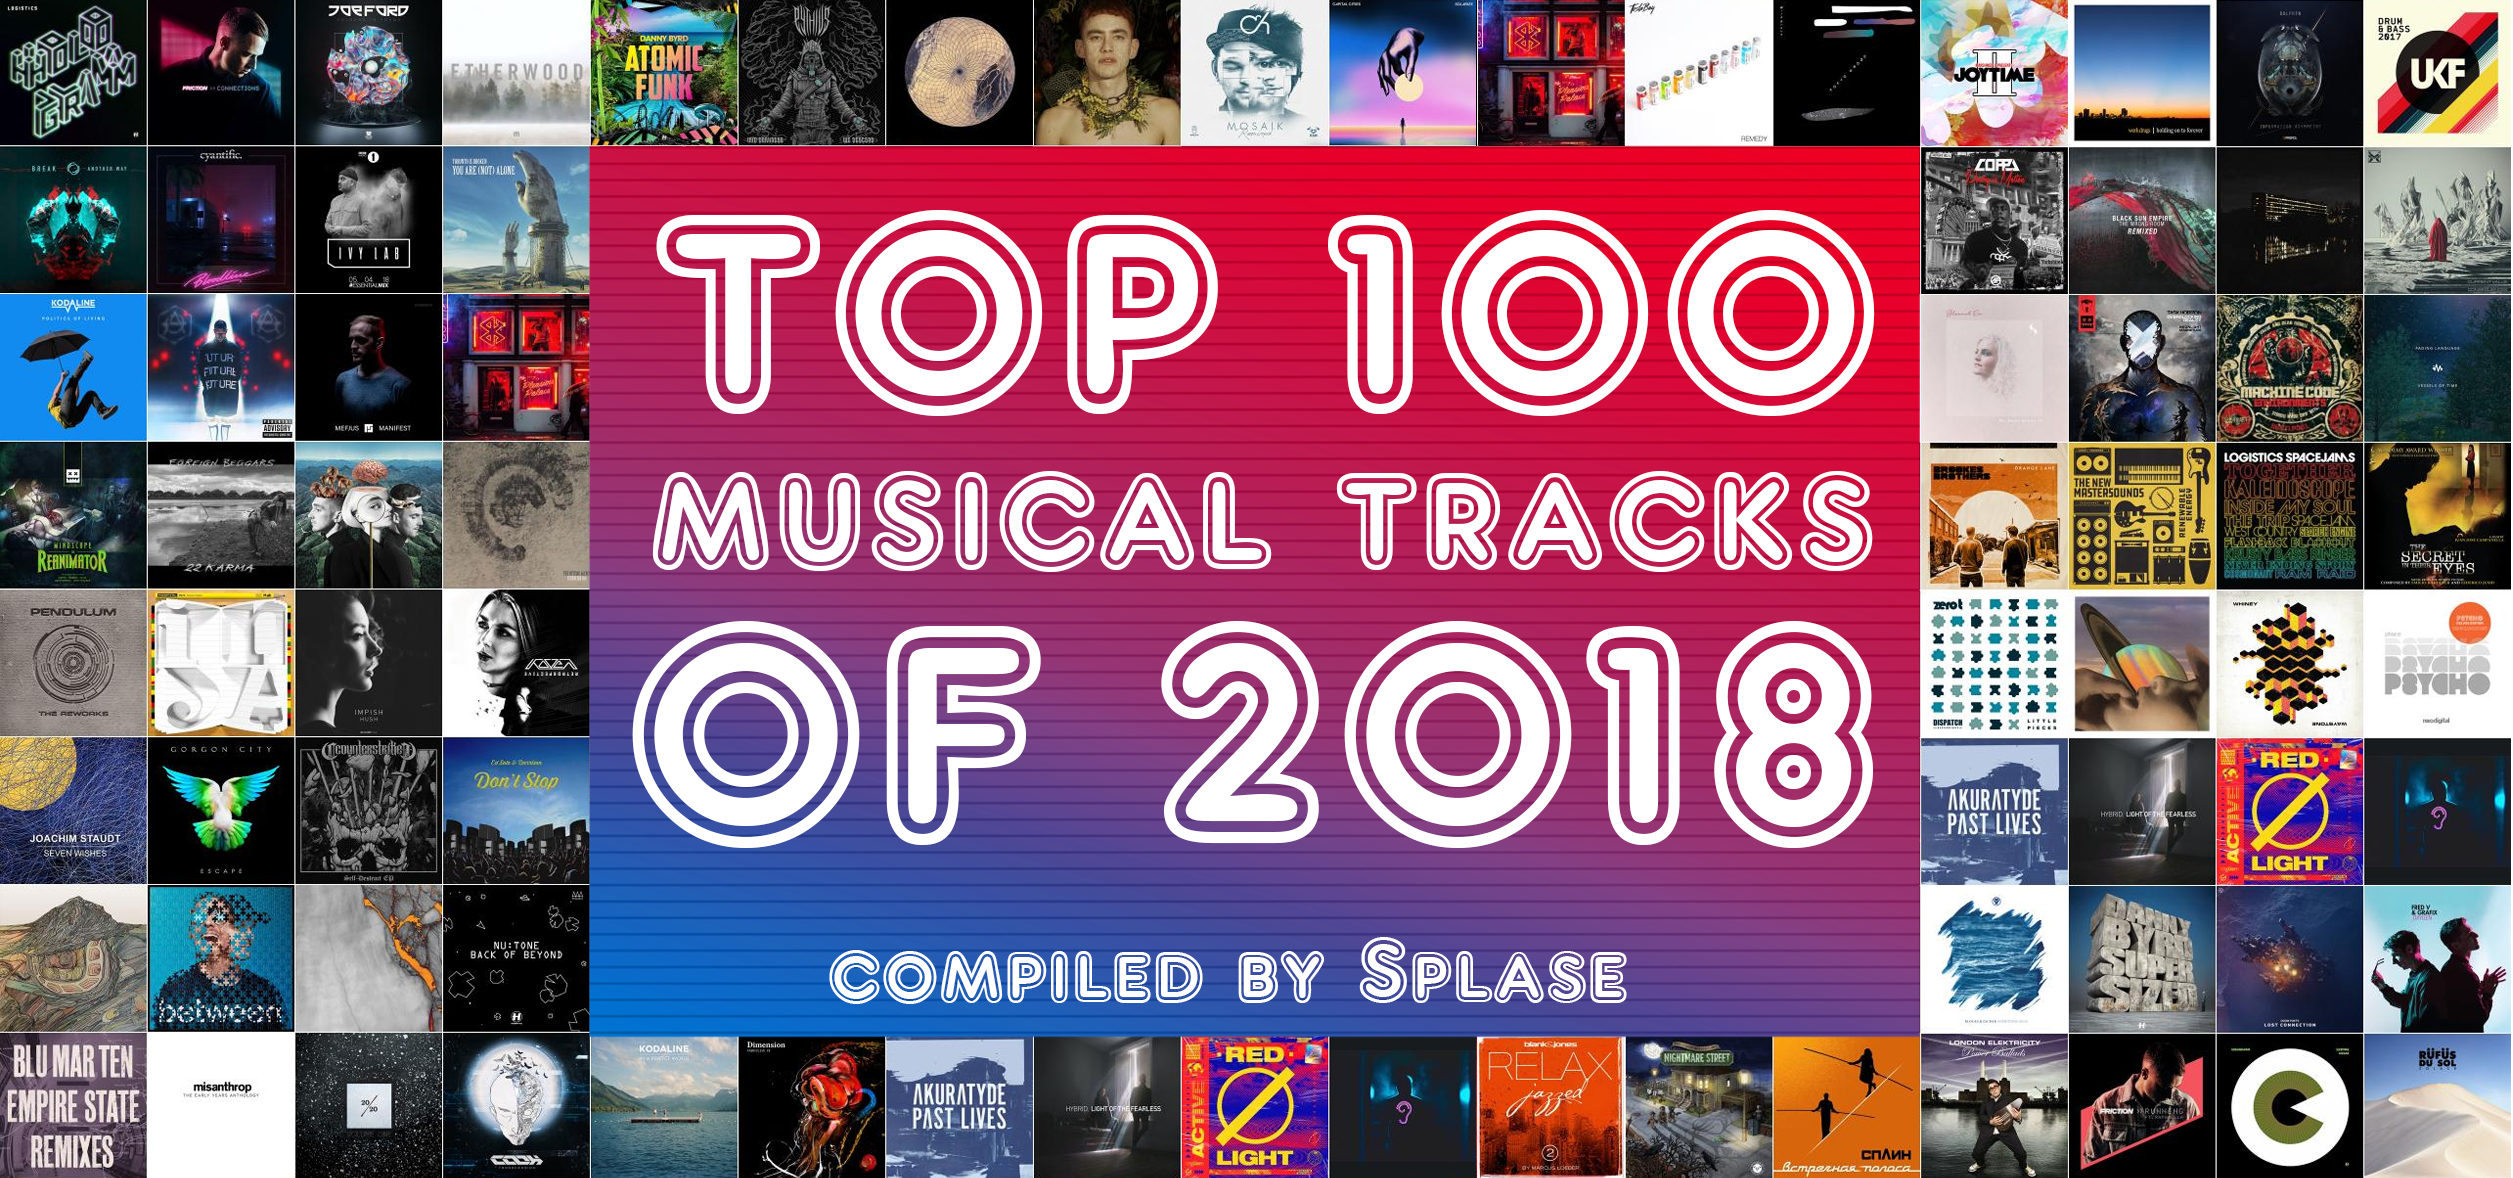 ТОП 50 Музыкальных треков 2017 года по моей версии / TOP 50 Musical Tracks of 2017 compiled by Splase